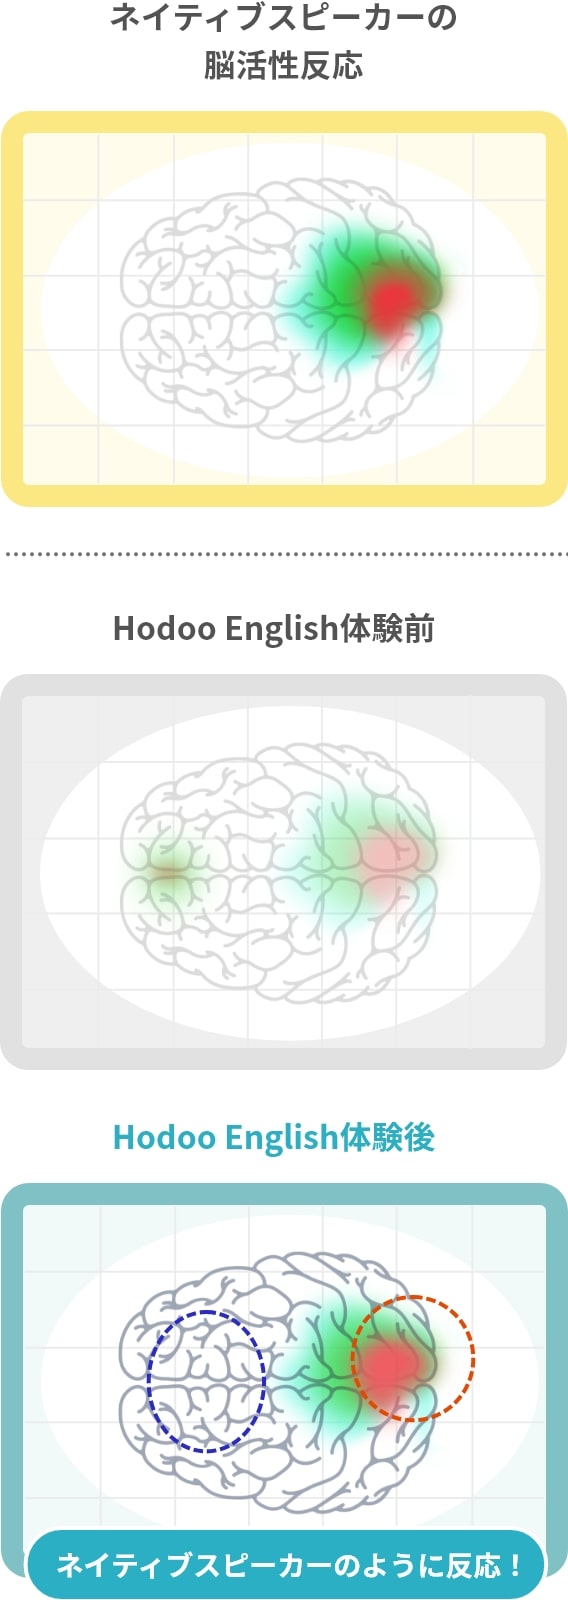 Hodoo Englishを行った学習者の脳が、ネイティブスピーカーのように反応したことを示した脳活性化反応の図